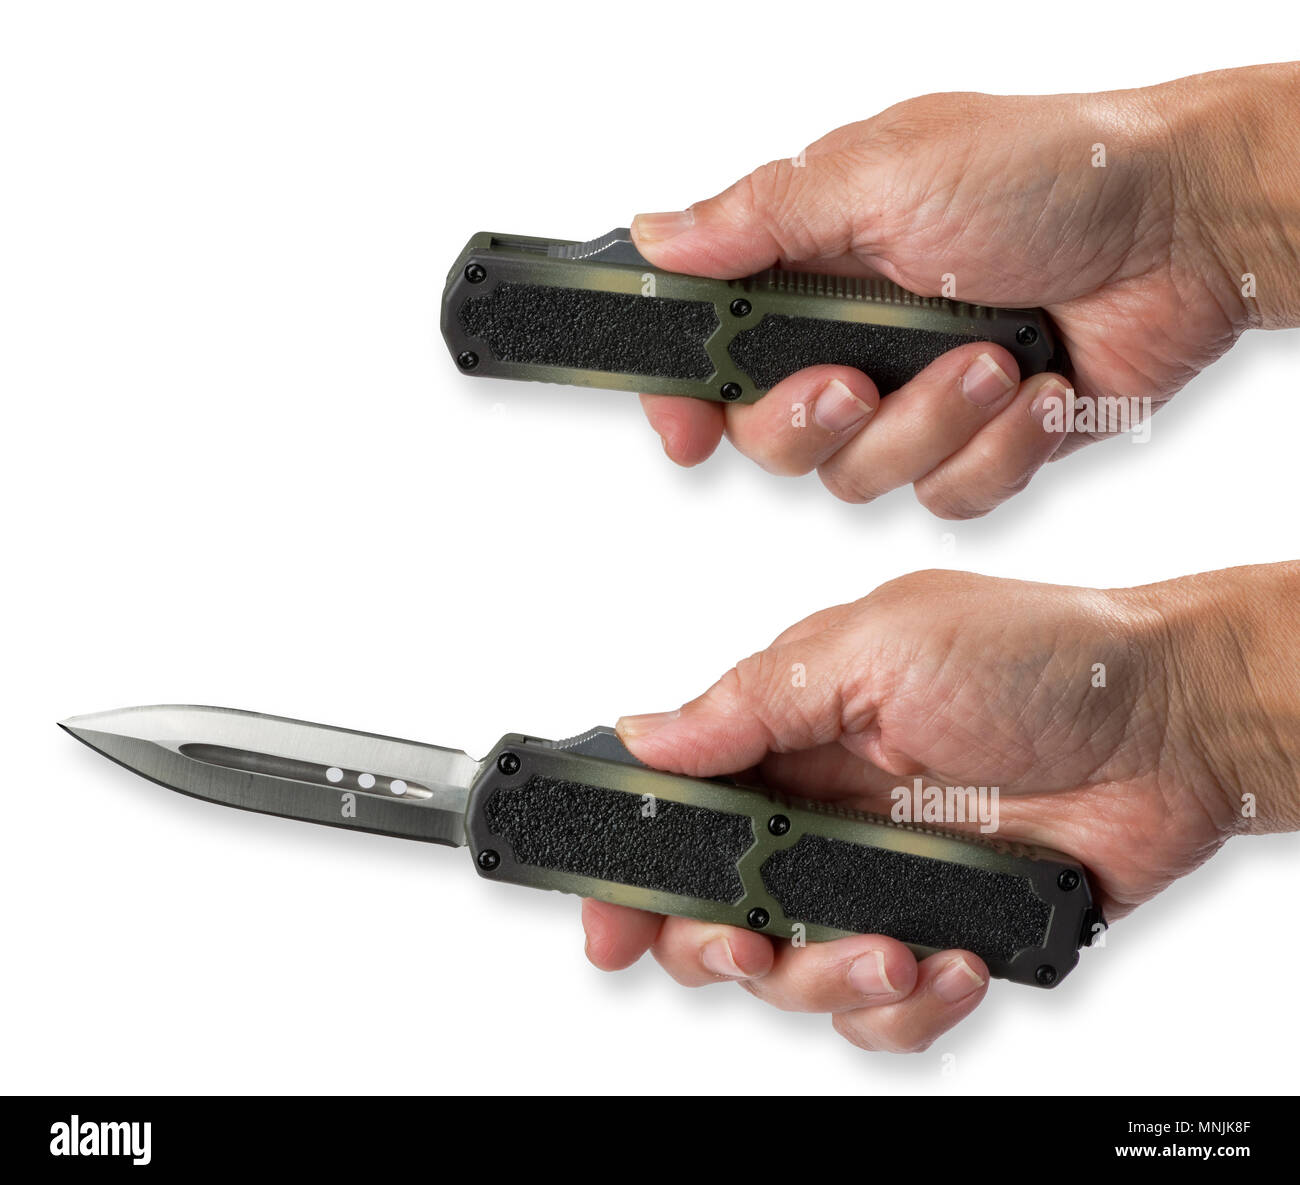 Couteau automatique que l'on appelle parfois un couteau à ouvrir avec bouton de piston. Banque D'Images